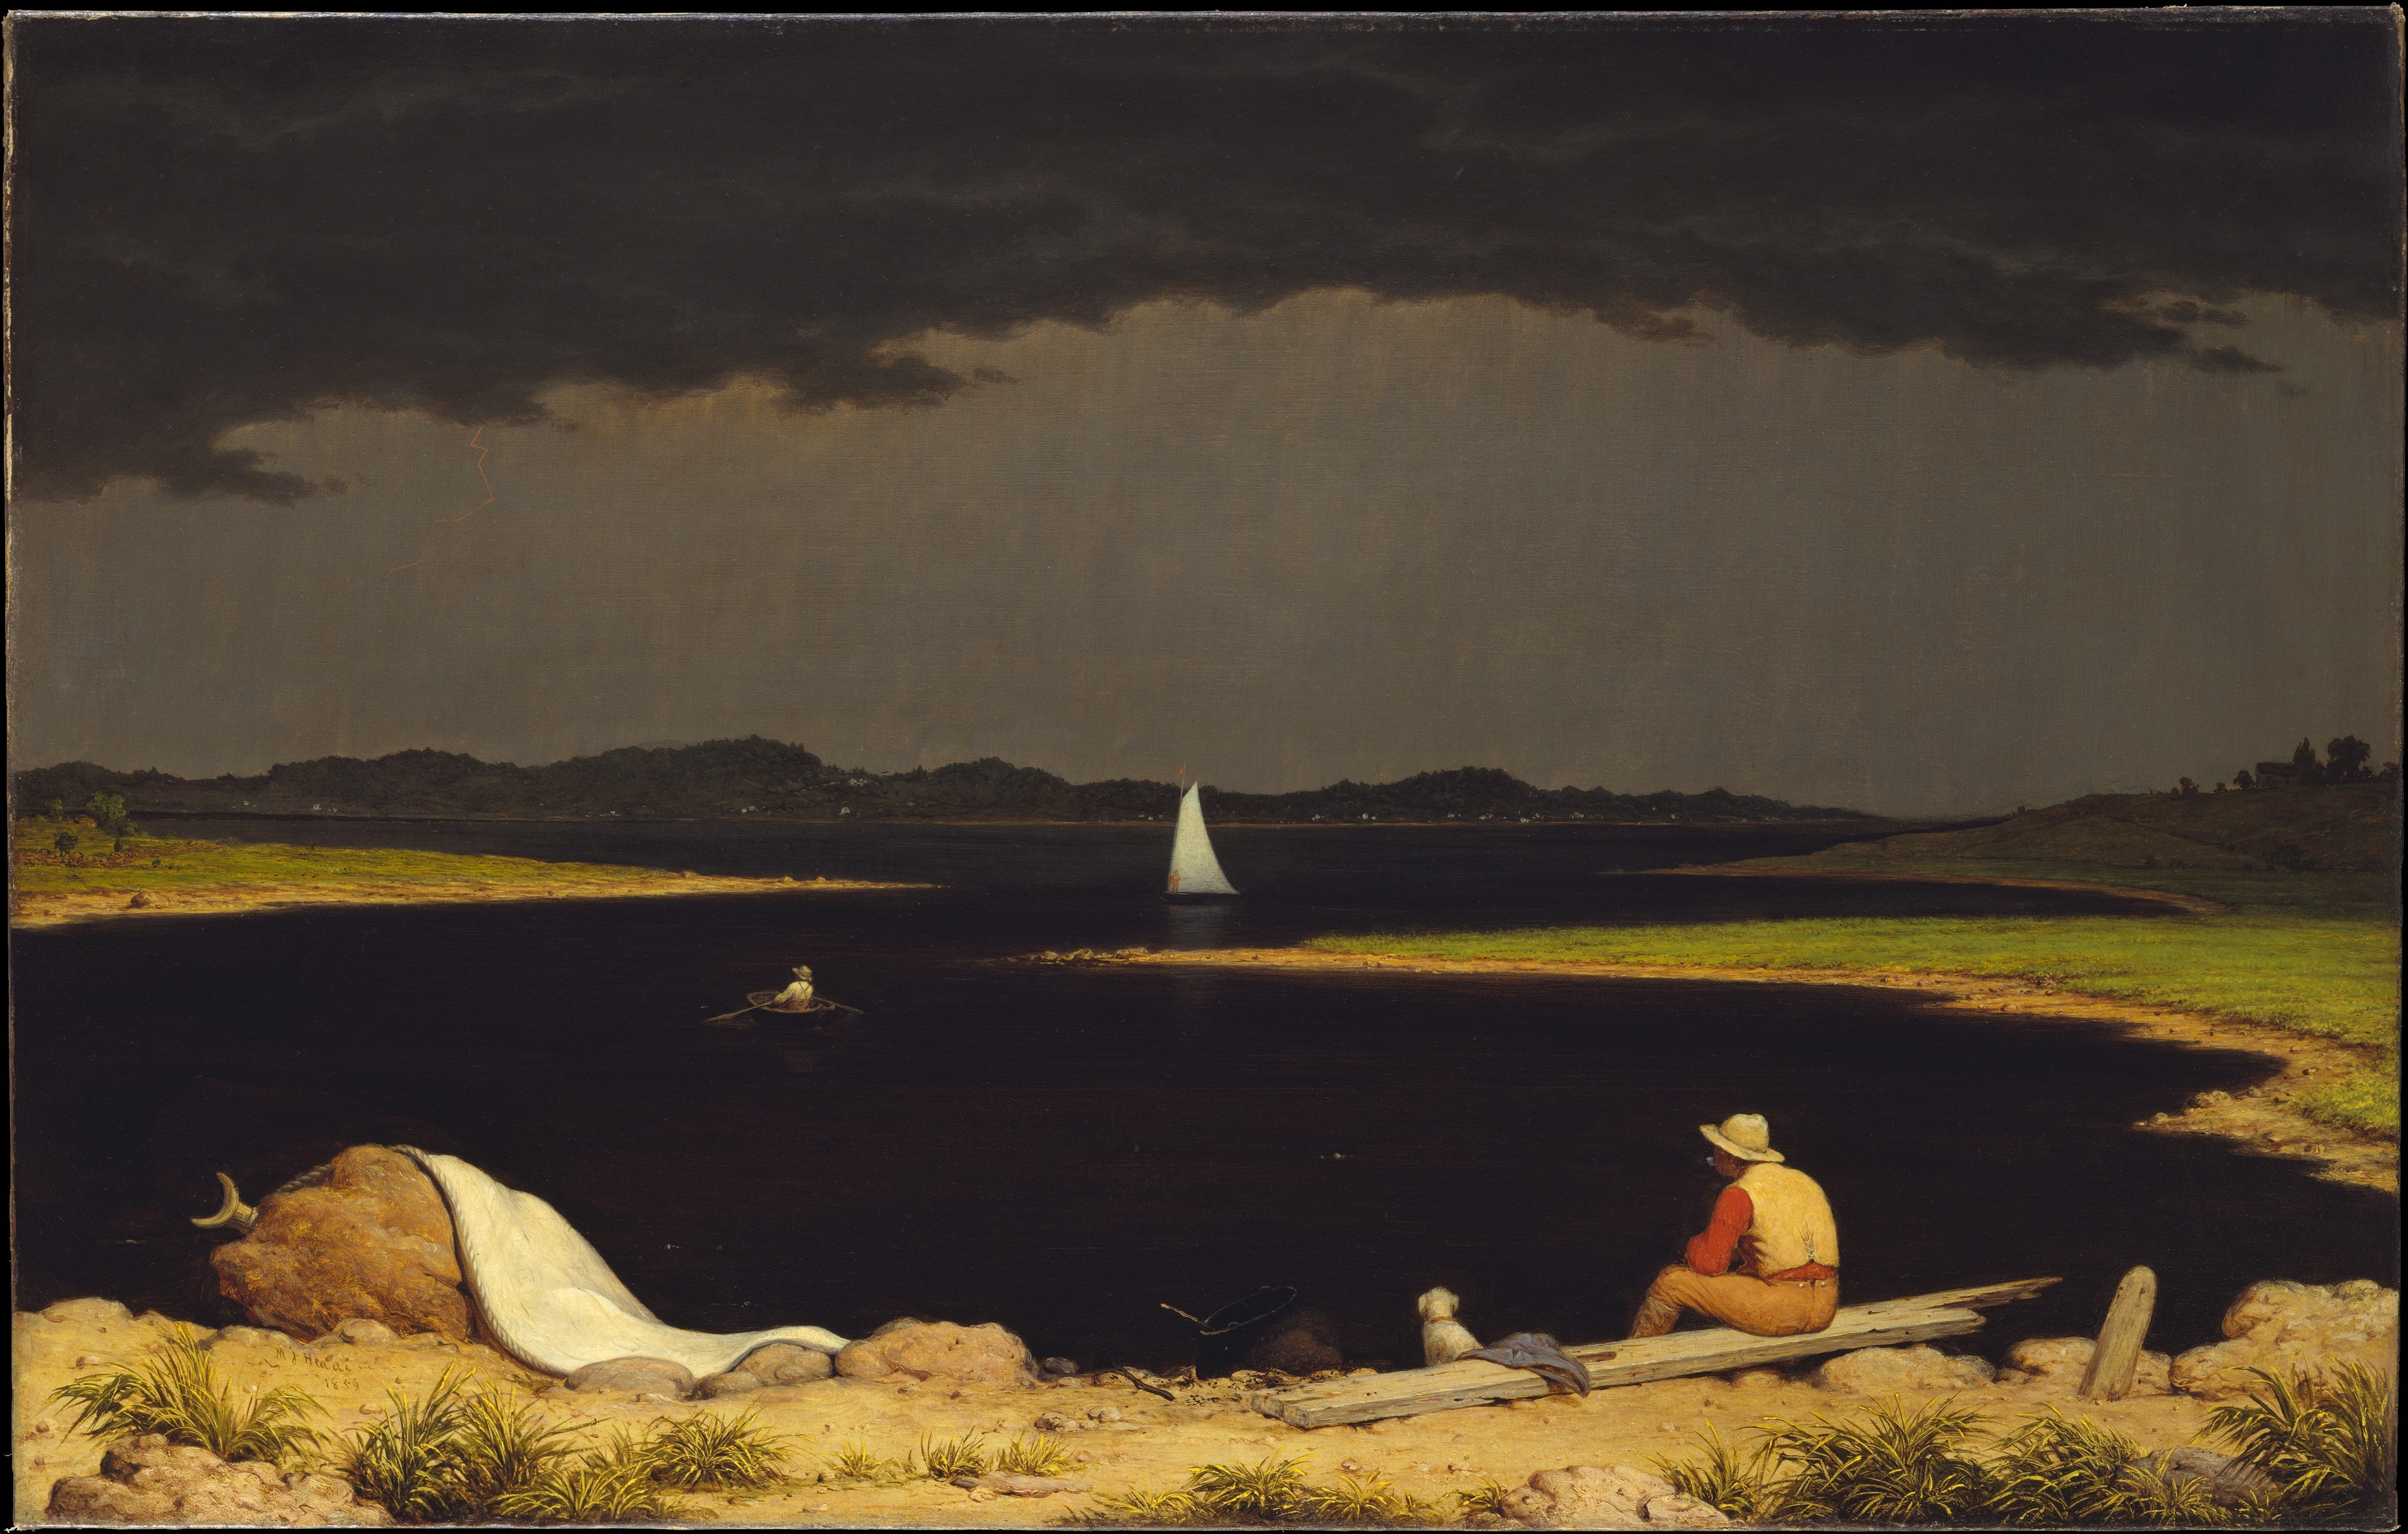 近づく嵐 by Martin Johnson Heade - 1859年 - 71.1 x 111.8 cm 